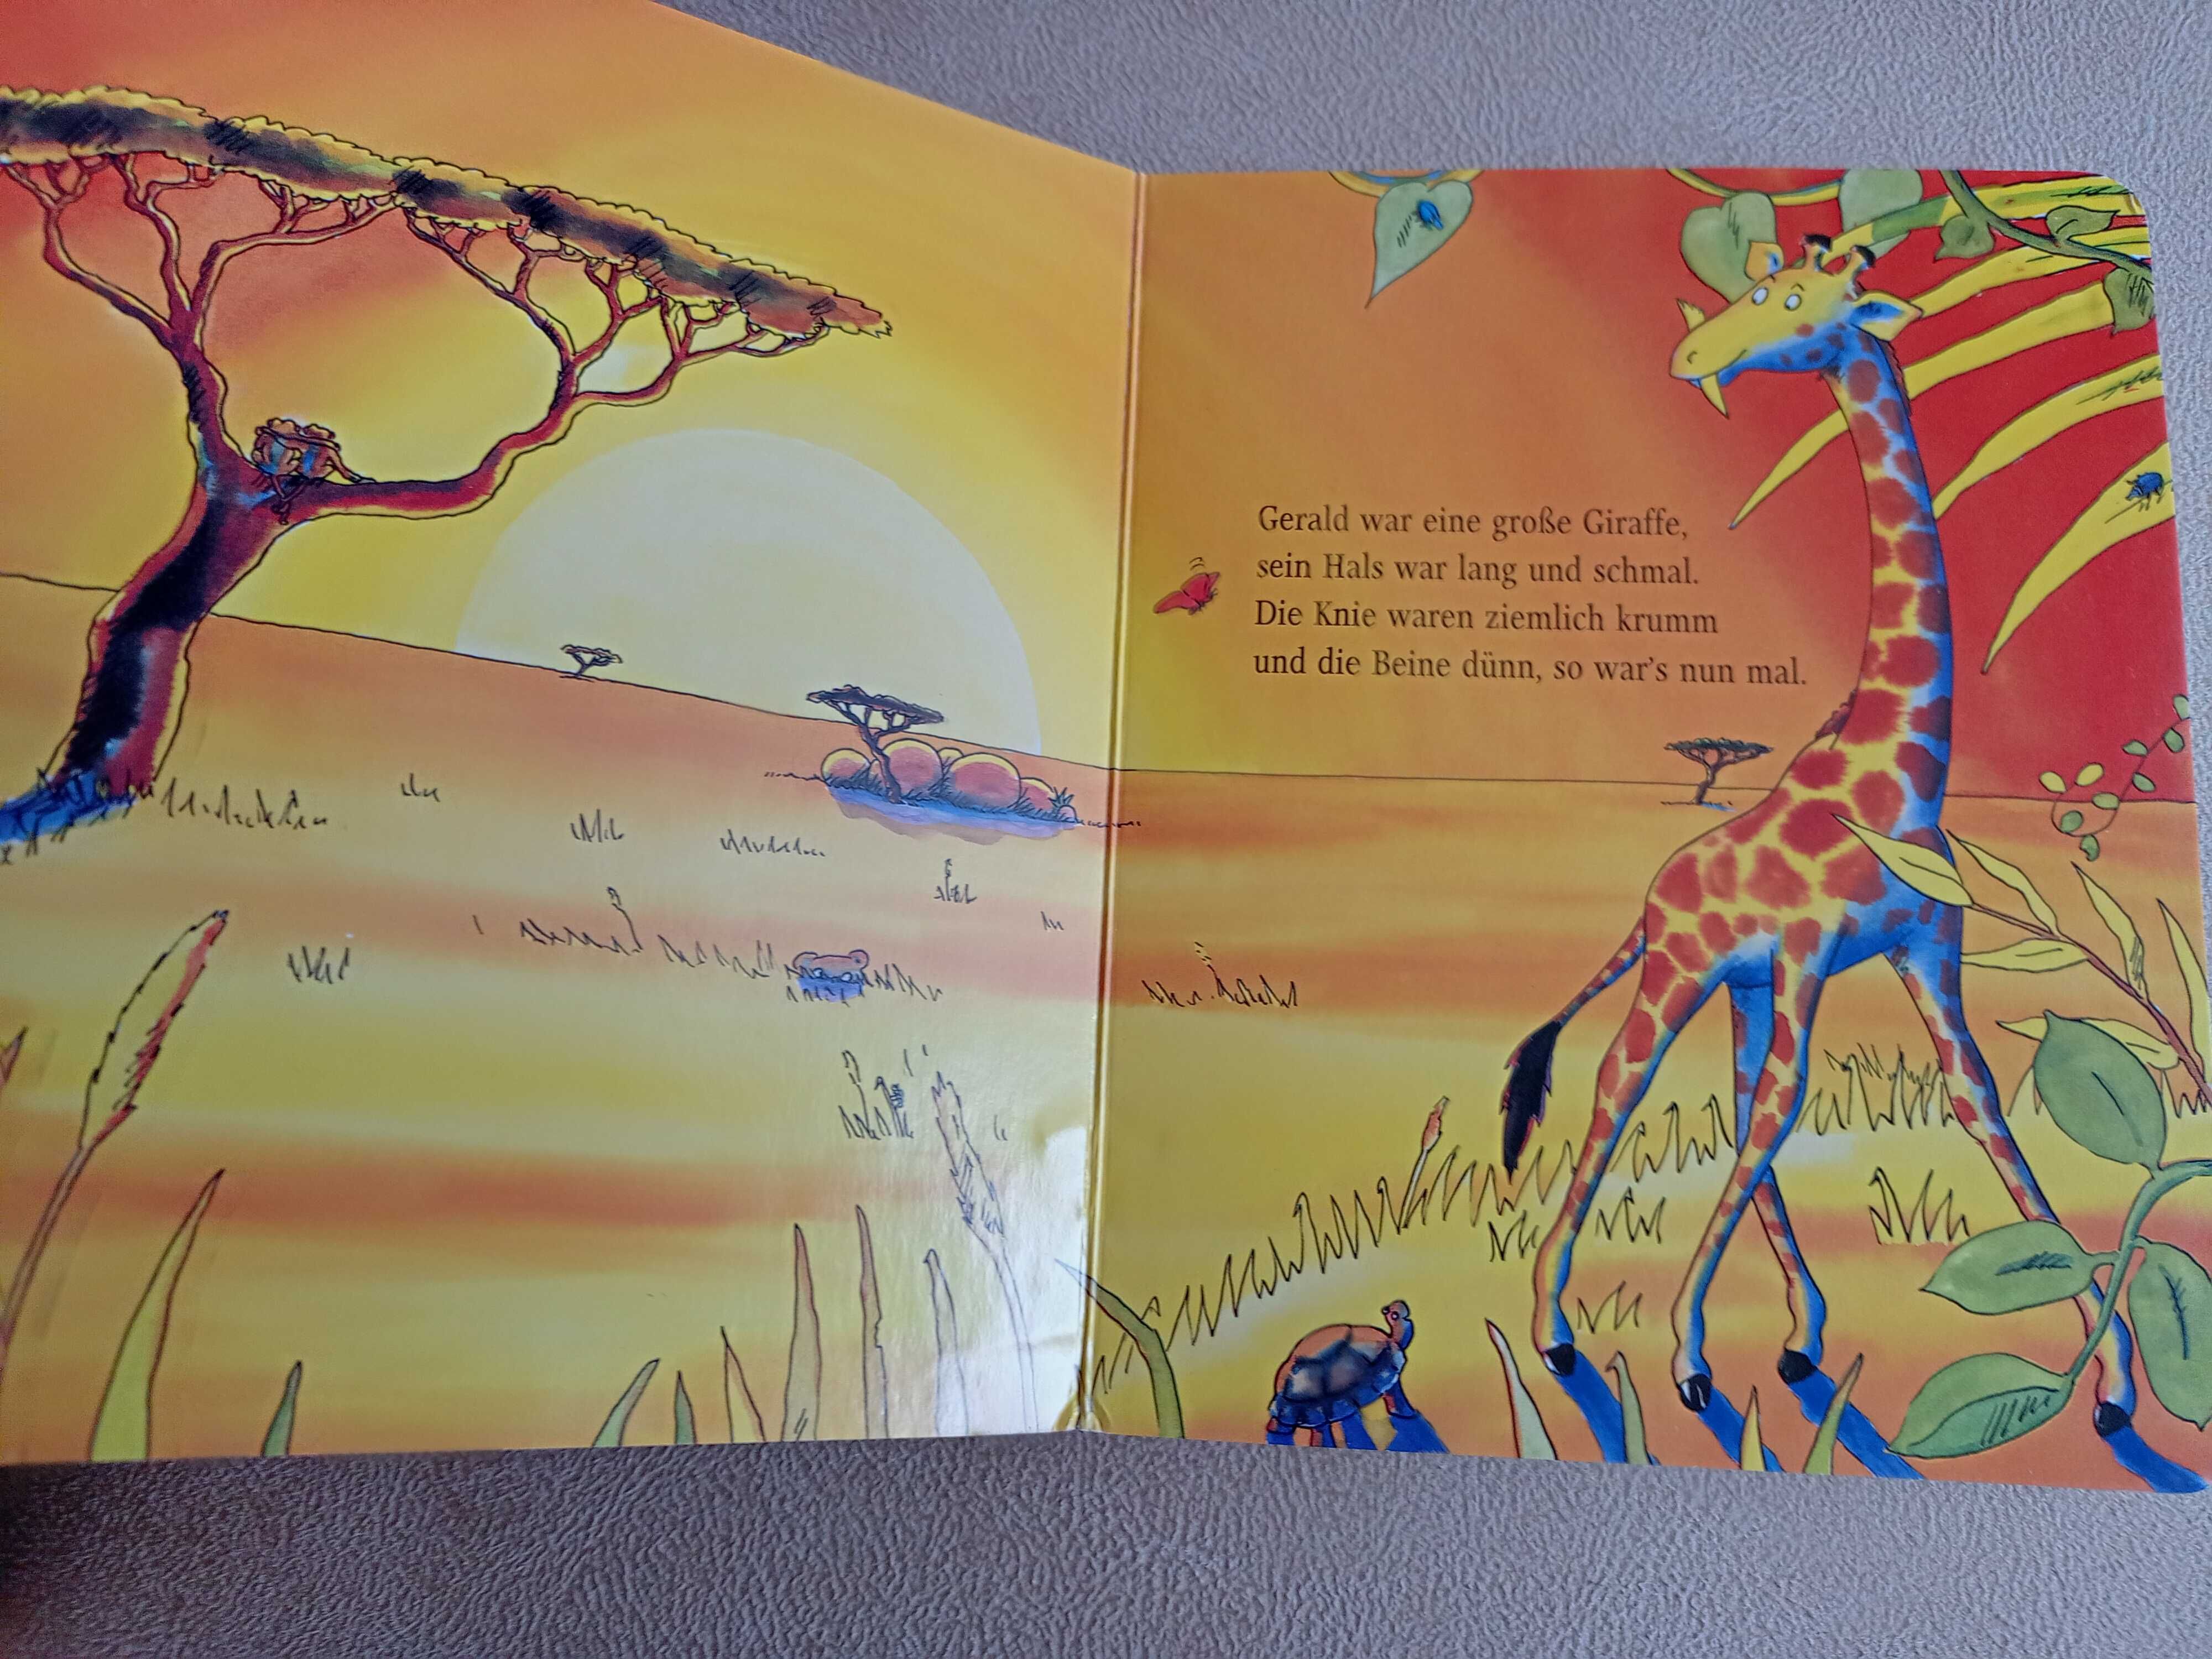 книга на немецком языке для детей Giraffen konnen/ детская книга